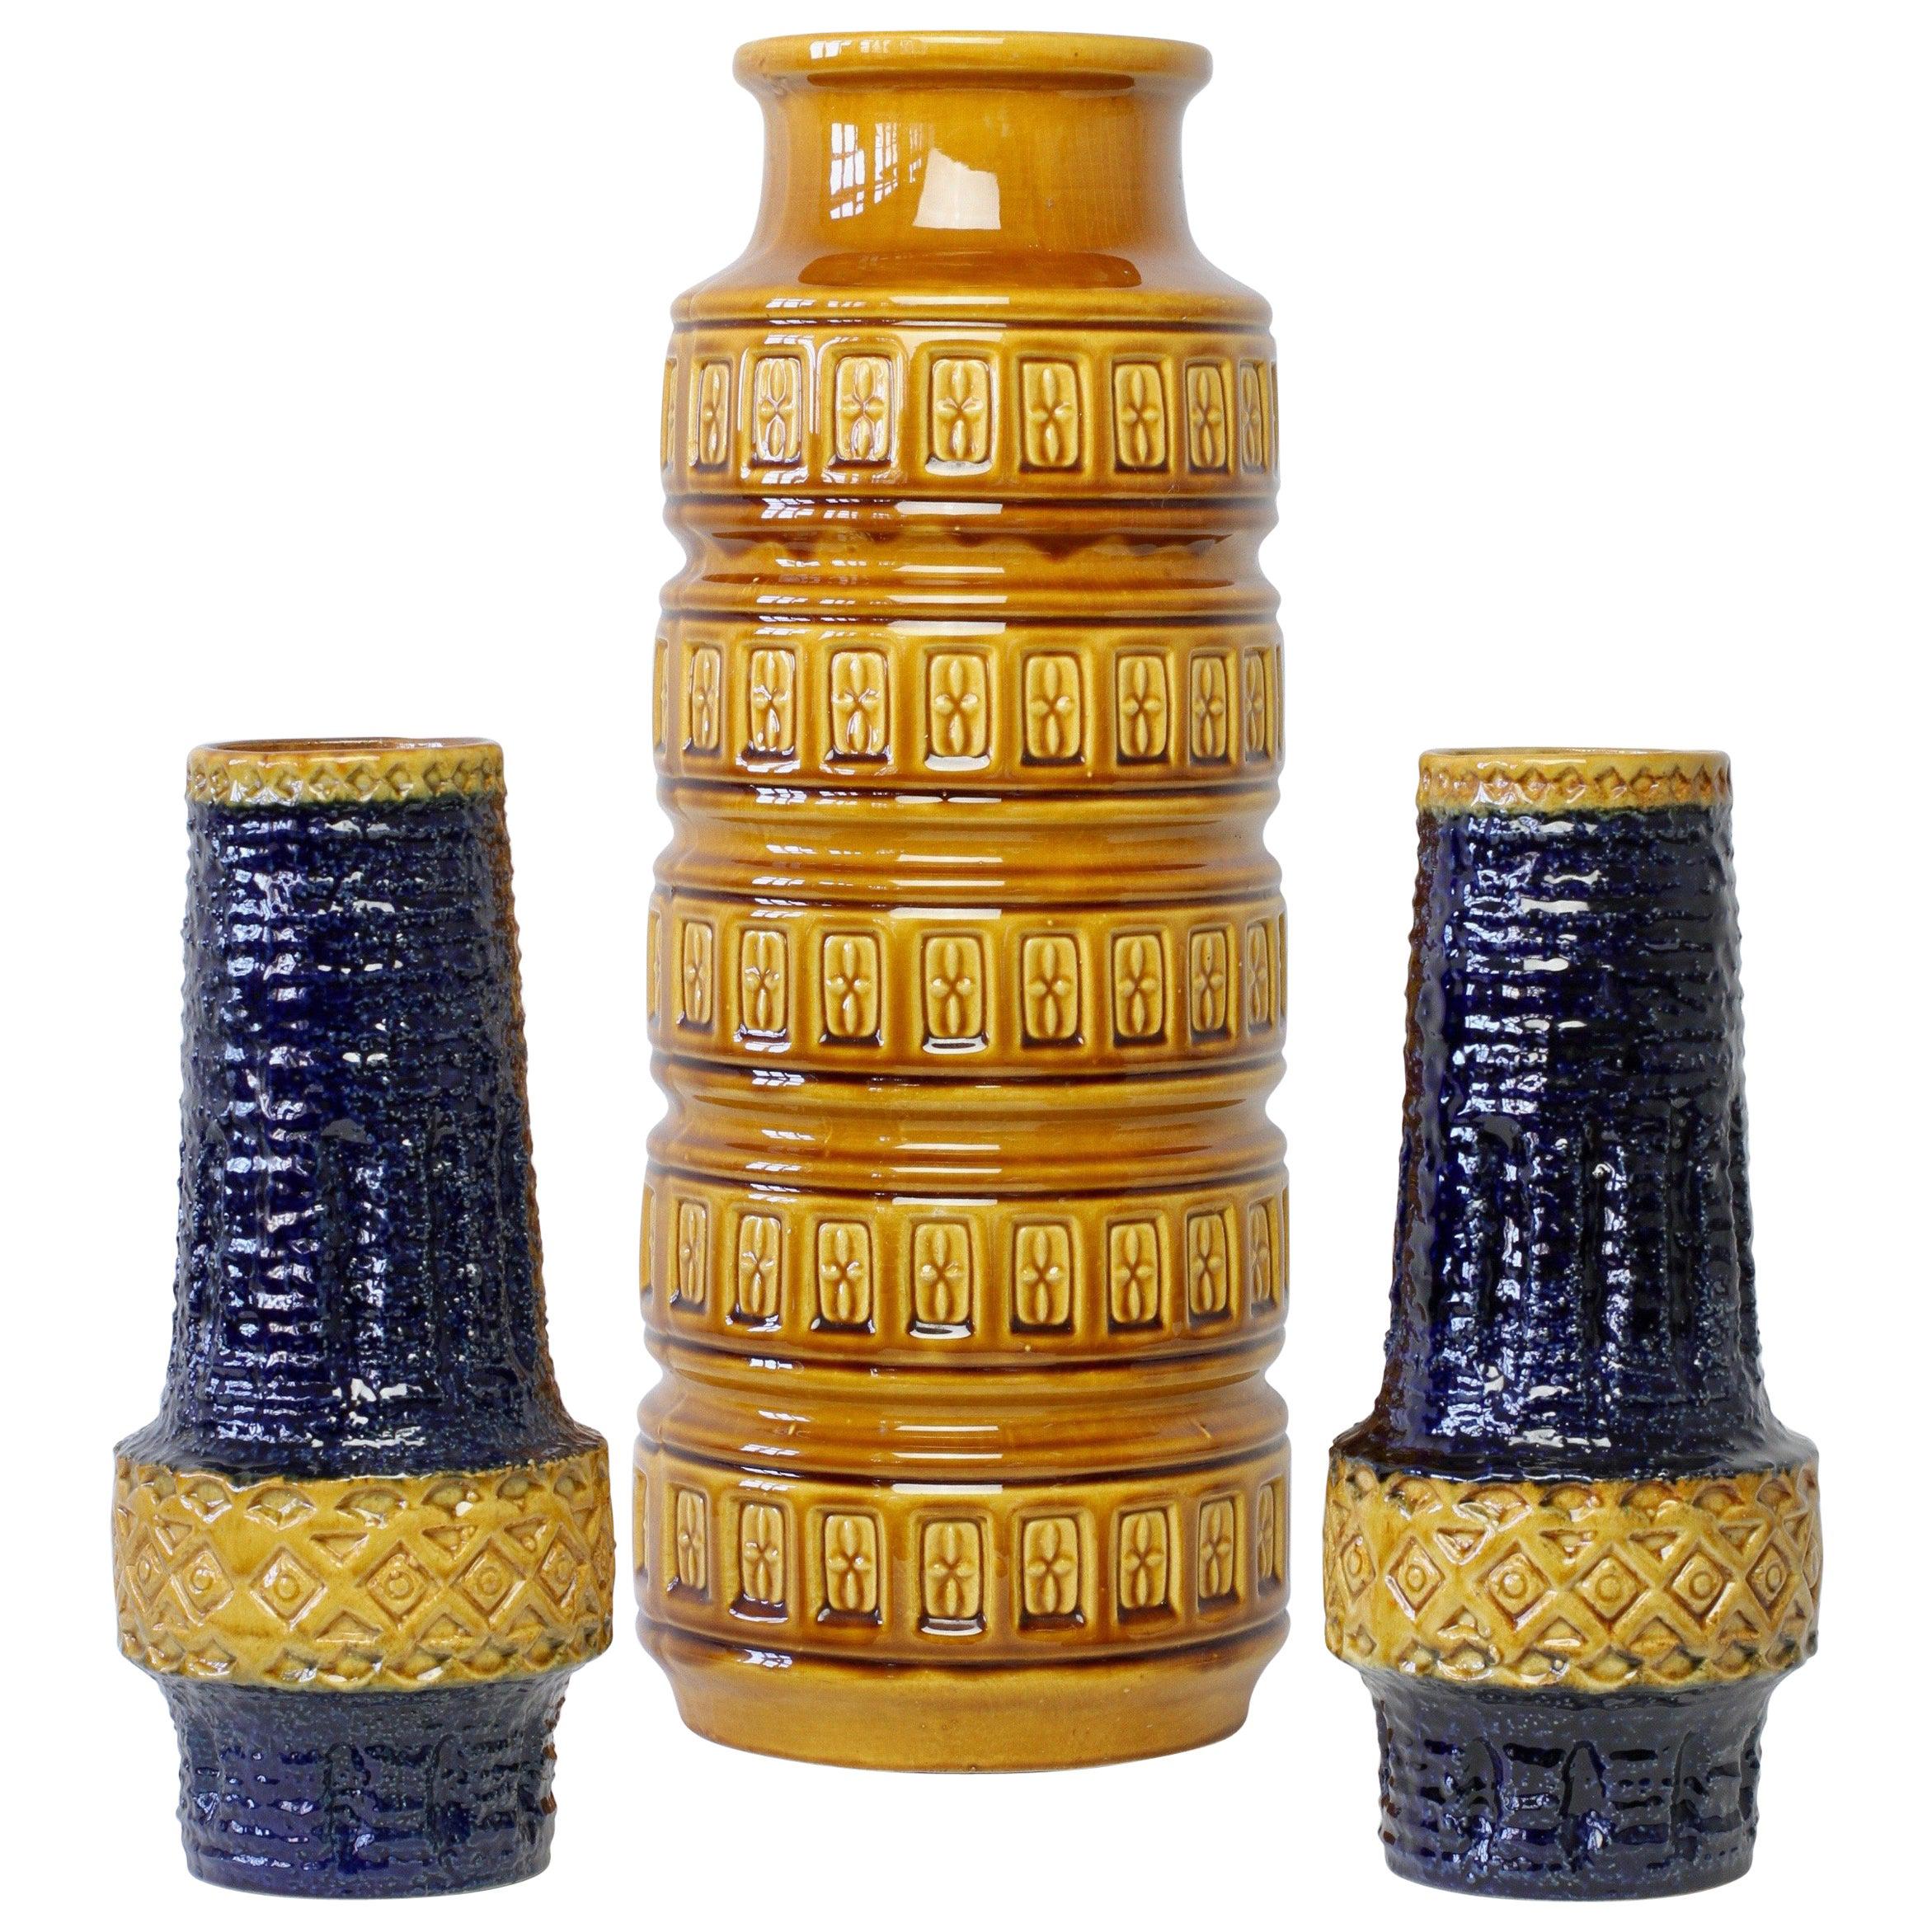 Trio of Mid-Century West German Vases by Bay Keramik & Spara Pottery, circa 1970